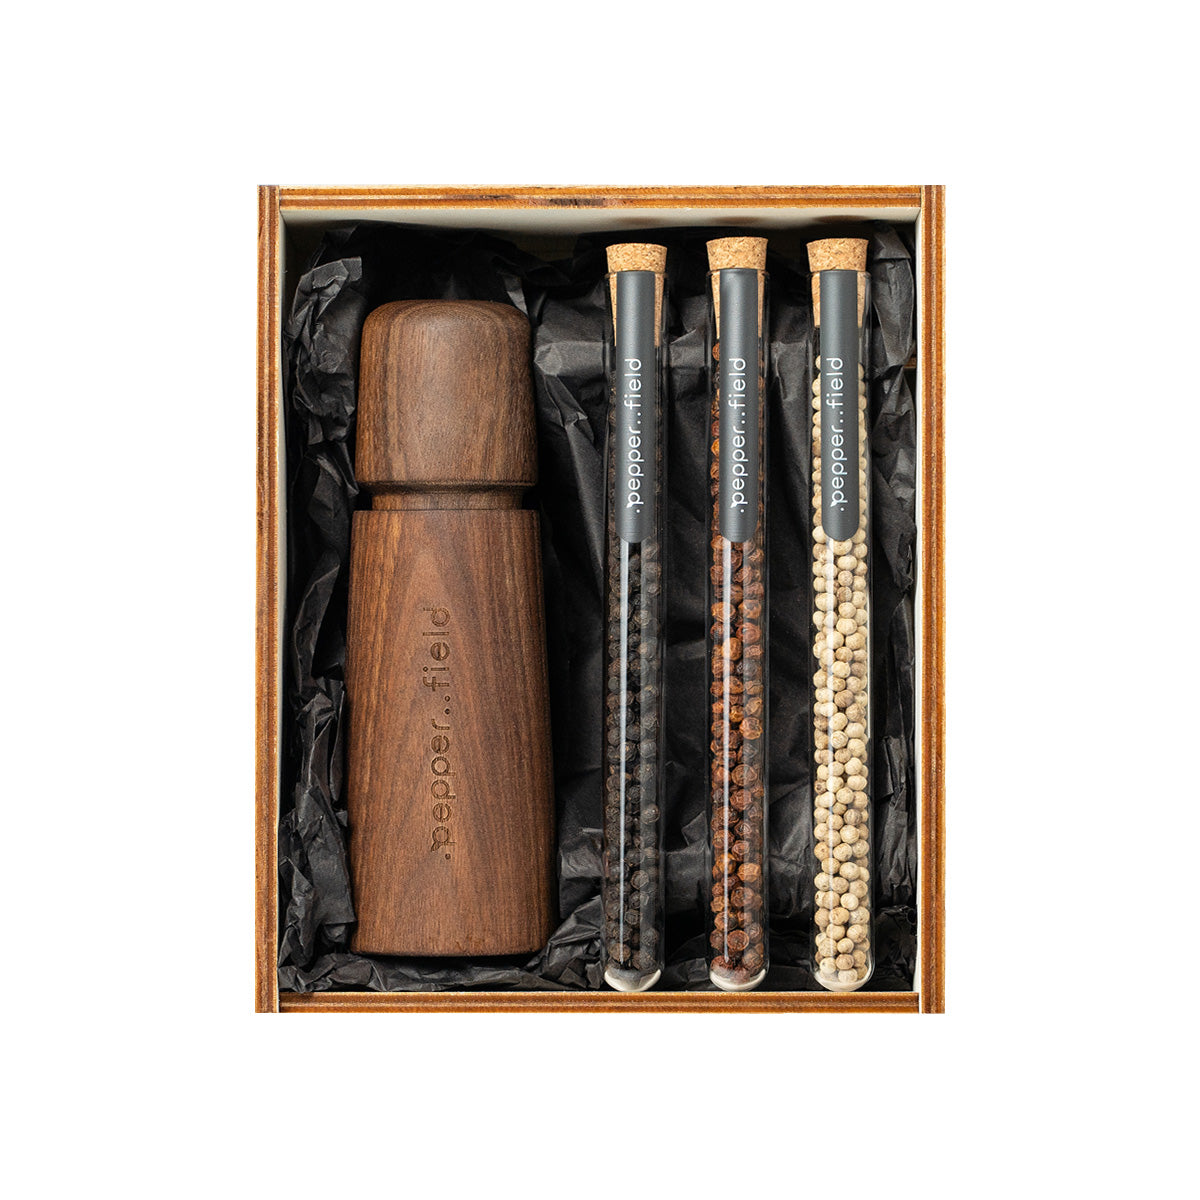 Škandinávsky mlynček so sadou trubičiek s korením Kampot v drevenej darčekovej krabičke (3x10g)